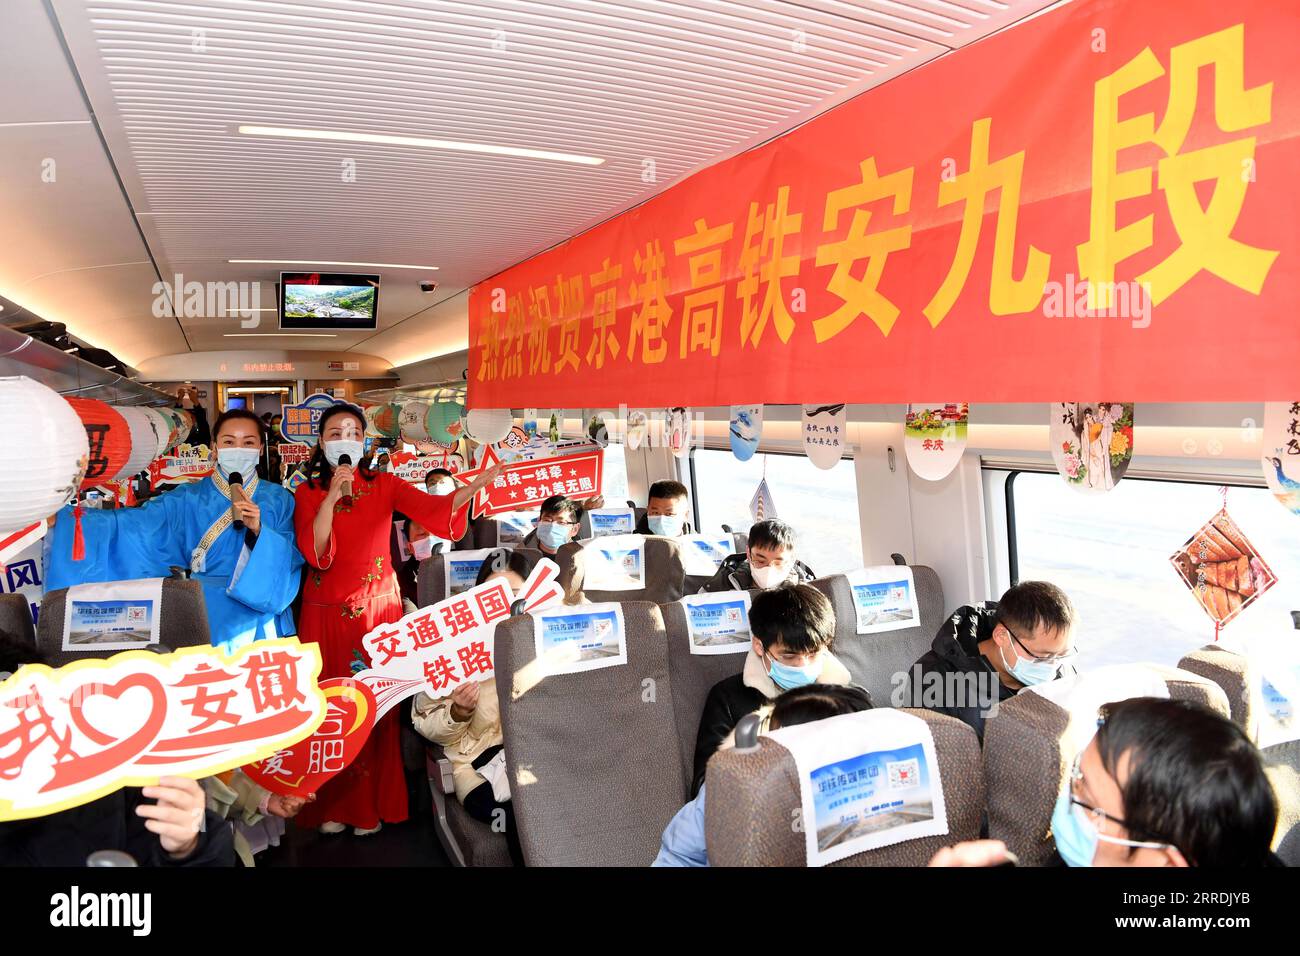 211230 -- HEFEI, 30 dicembre 2021 -- i membri dell'equipaggio organizzano uno spettacolo durante una cerimonia su un treno ferroviario ad alta velocità che parte da Hefei nella provincia di Anhui della Cina orientale a Shenzhen nella provincia del Guangdong della Cina meridionale, 30 dicembre 2021. Una nuova sezione ferroviaria ad alta velocità che collega la città di Anqing nella provincia di Anhui della Cina orientale, con la città di Jiujiang nella provincia di Jiangxi della Cina orientale è entrata in funzione giovedì. La linea di 176 km, con sette stazioni lungo il suo percorso, ridurrà il tempo di viaggio tra la capitale di Anhui Hefei e la capitale di Jiangxi Nanchang a due ore e 22 minuti, secondo la China Railway Shanghai Grou Foto Stock